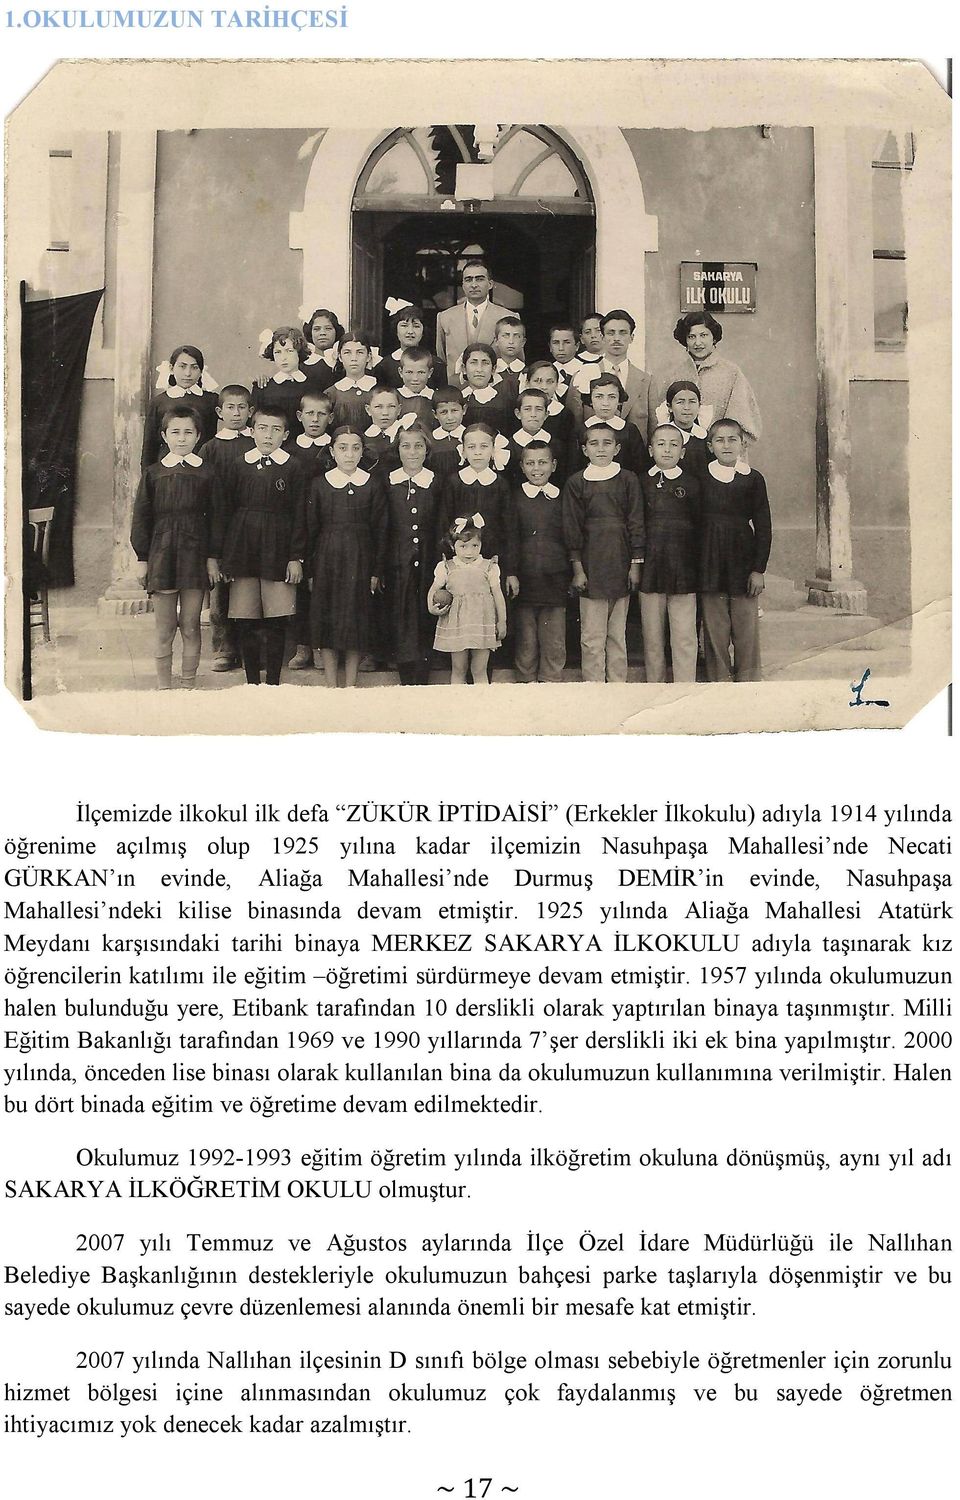 1925 yılında Aliağa Mahallesi Atatürk Meydanı karşısındaki tarihi binaya MERKEZ SAKARYA İLKOKULU adıyla taşınarak kız öğrencilerin katılımı ile eğitim öğretimi sürdürmeye devam etmiştir.